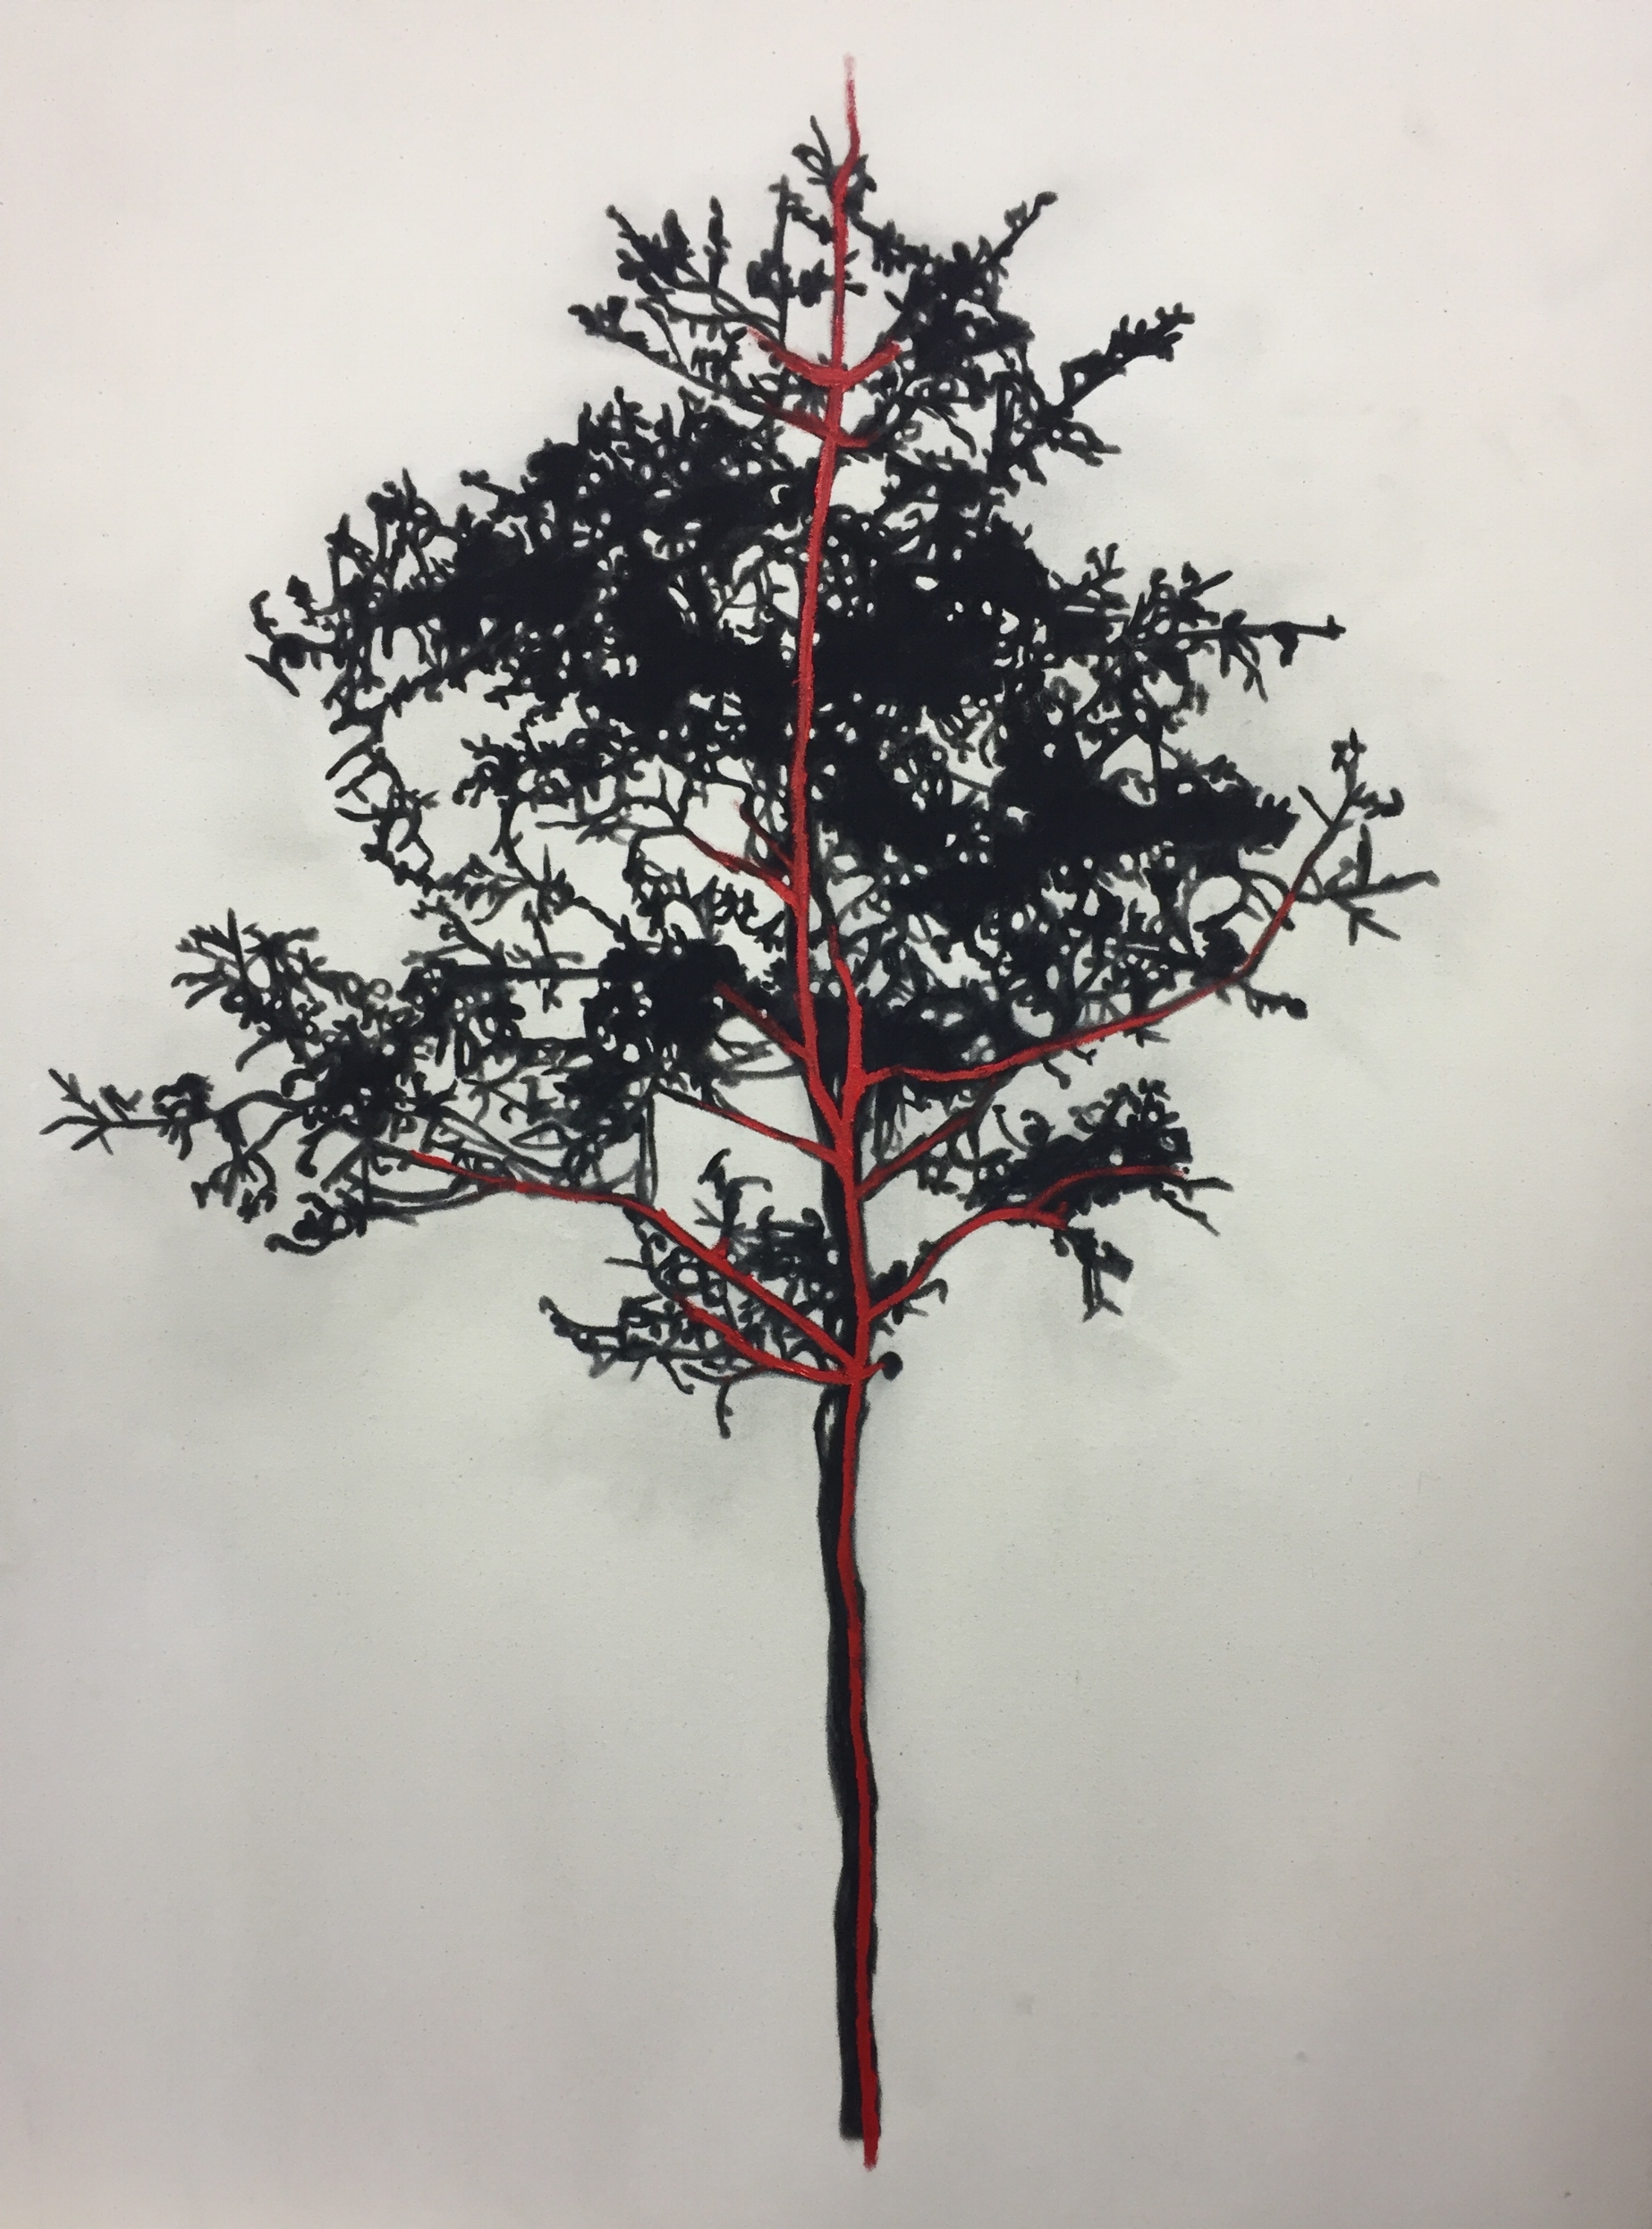   Étude pour arbre , 2015.&nbsp;Huile et fusain sur toile. 48 x 36 pouces.&nbsp; 